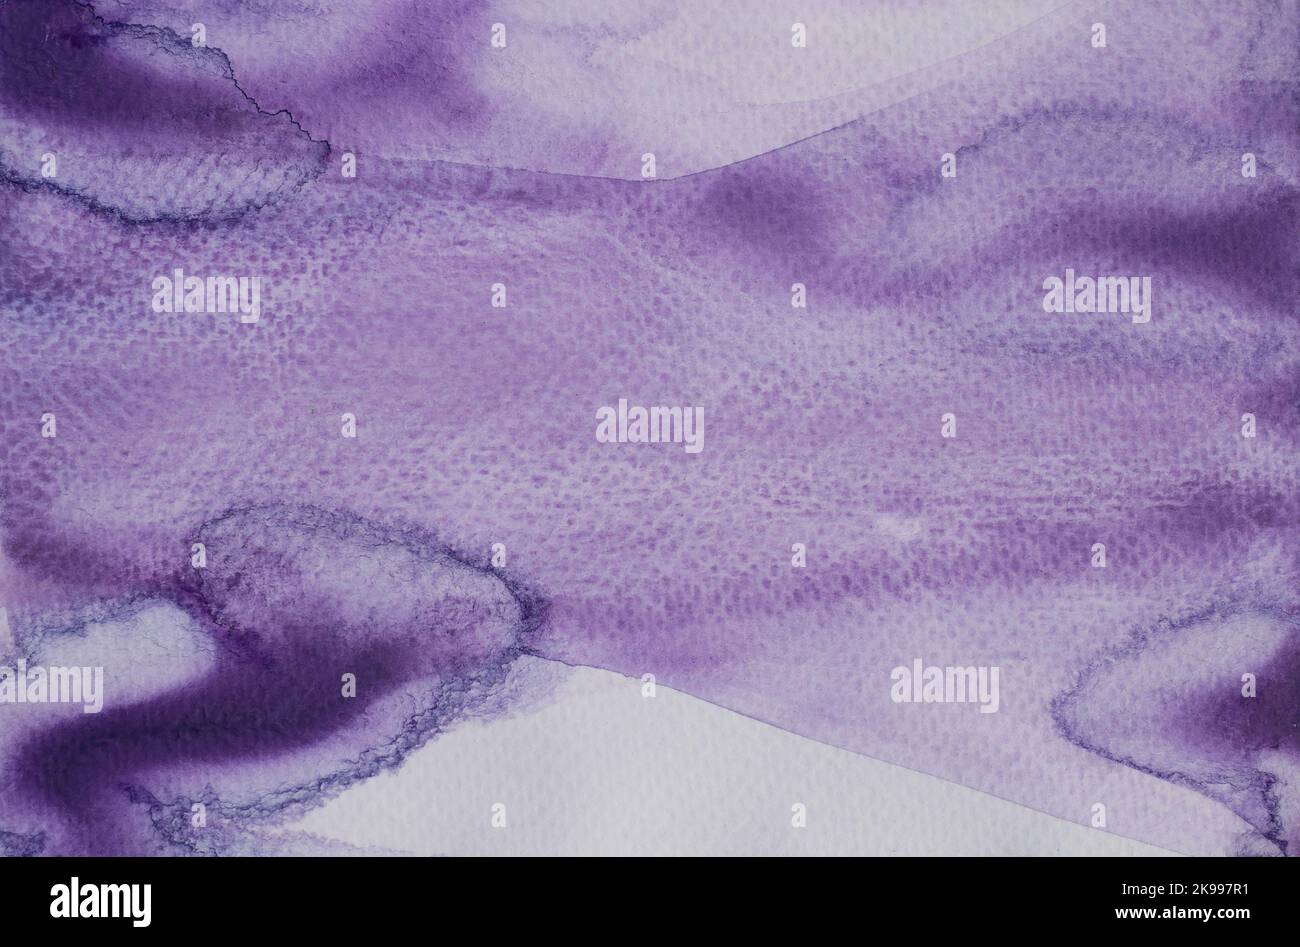 Arrière-plan abstrait et motif de texture avec flux de couleur violet sur fond blanc, Illustration aquarelle dessin à la main et peint sur papier Banque D'Images